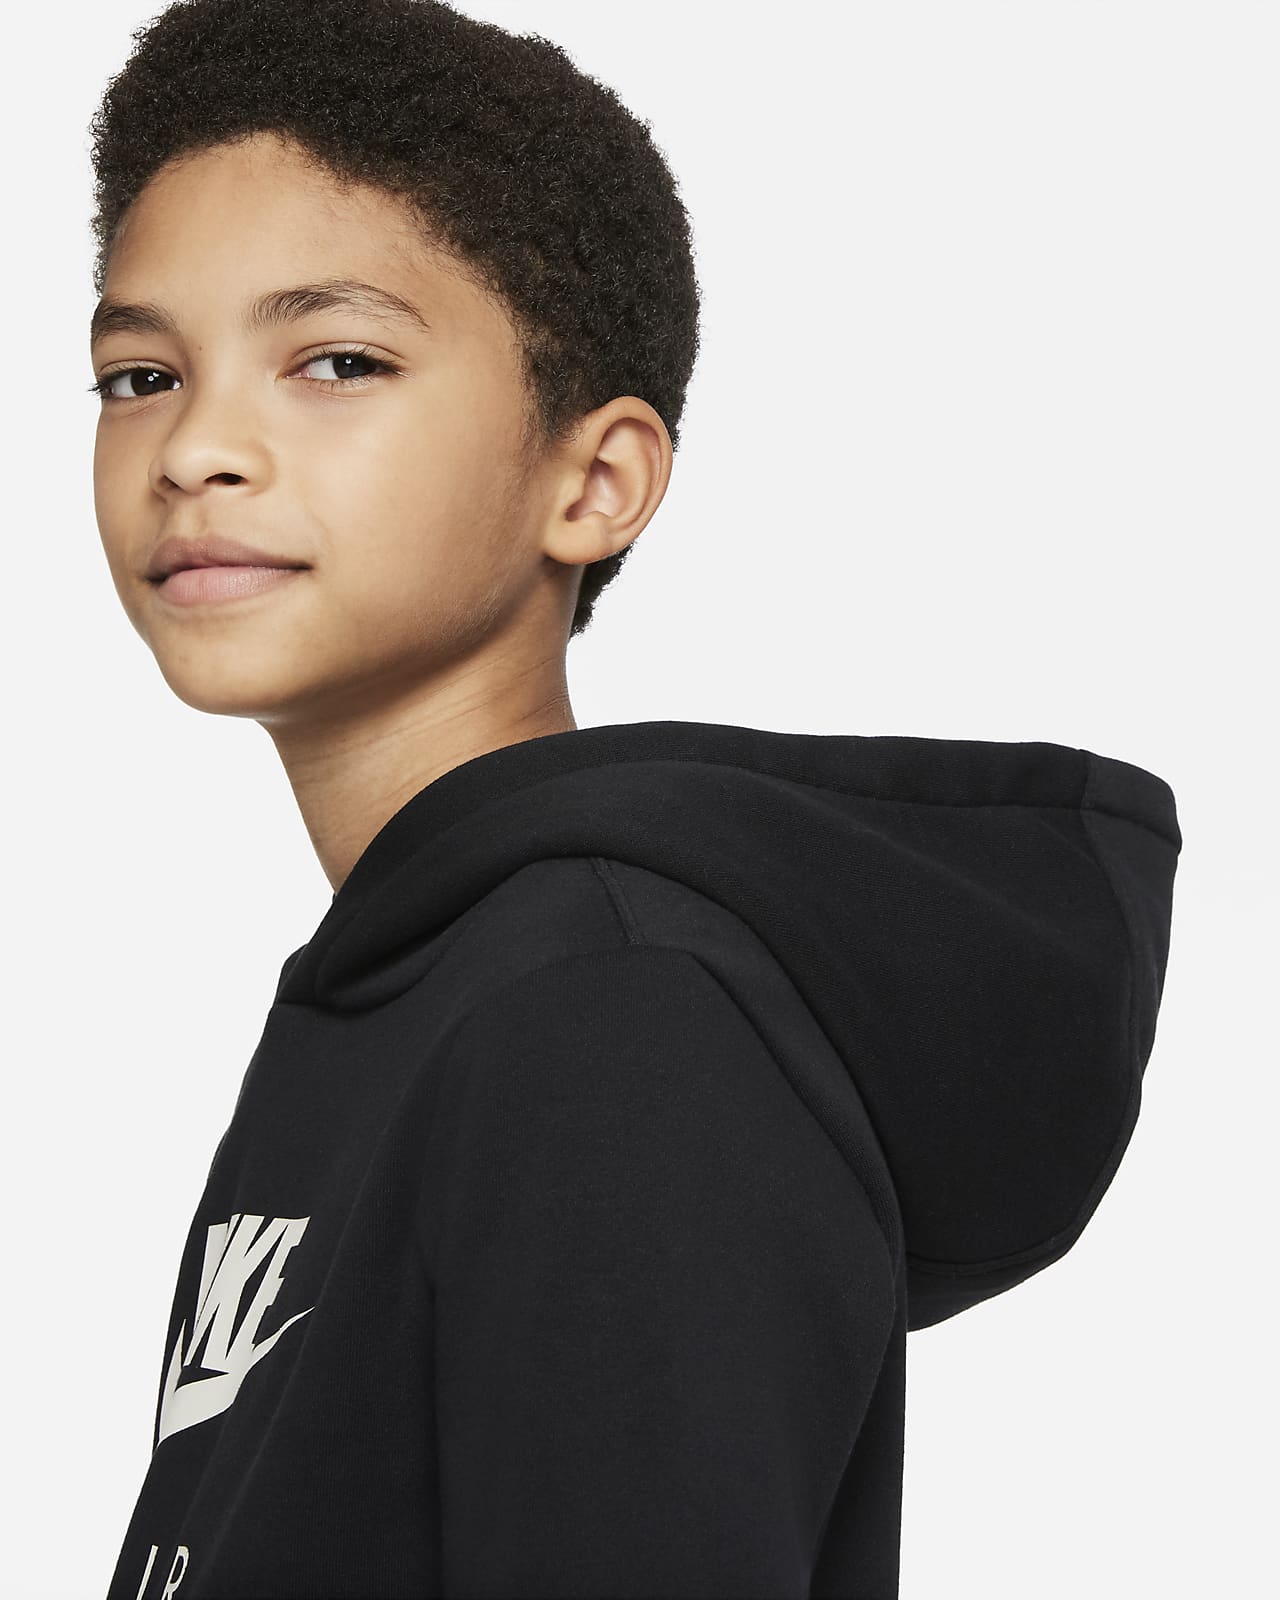 Nike Air Older Kids' (Boys') Pullover Hoodie. Nike ZA